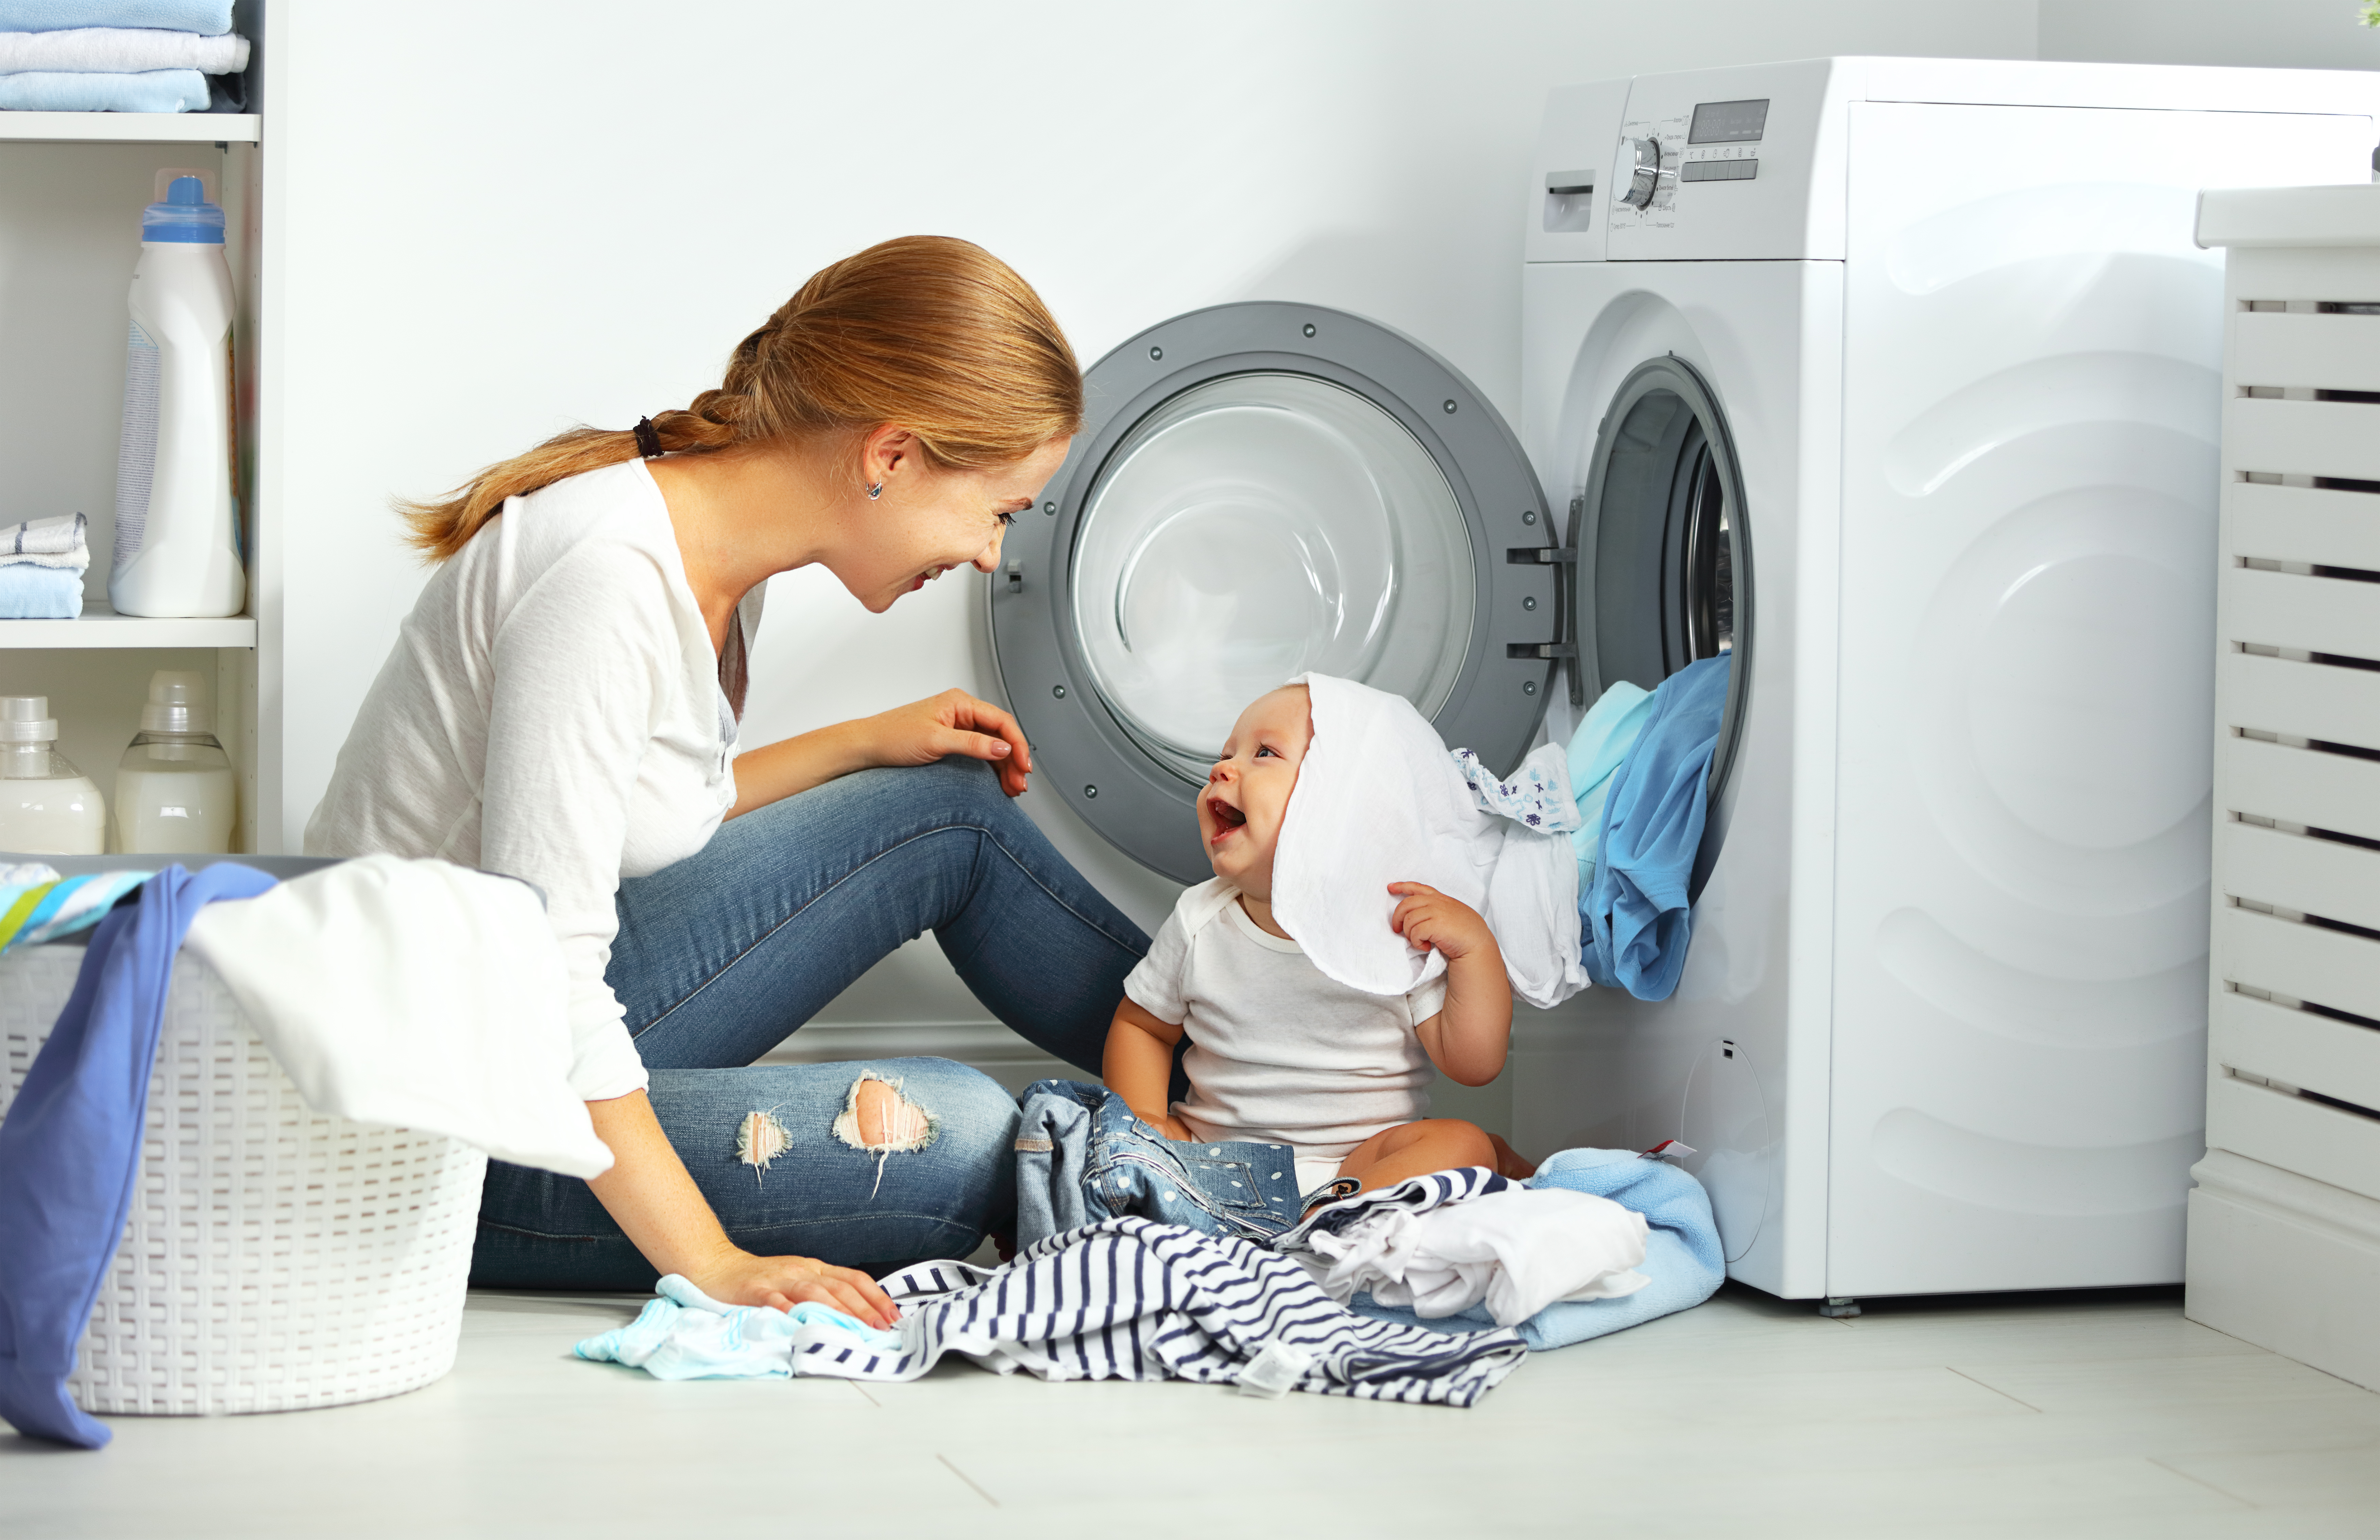 Hogyan mossuk a babánk ruháit? – a védőnő elárulja - Blikk